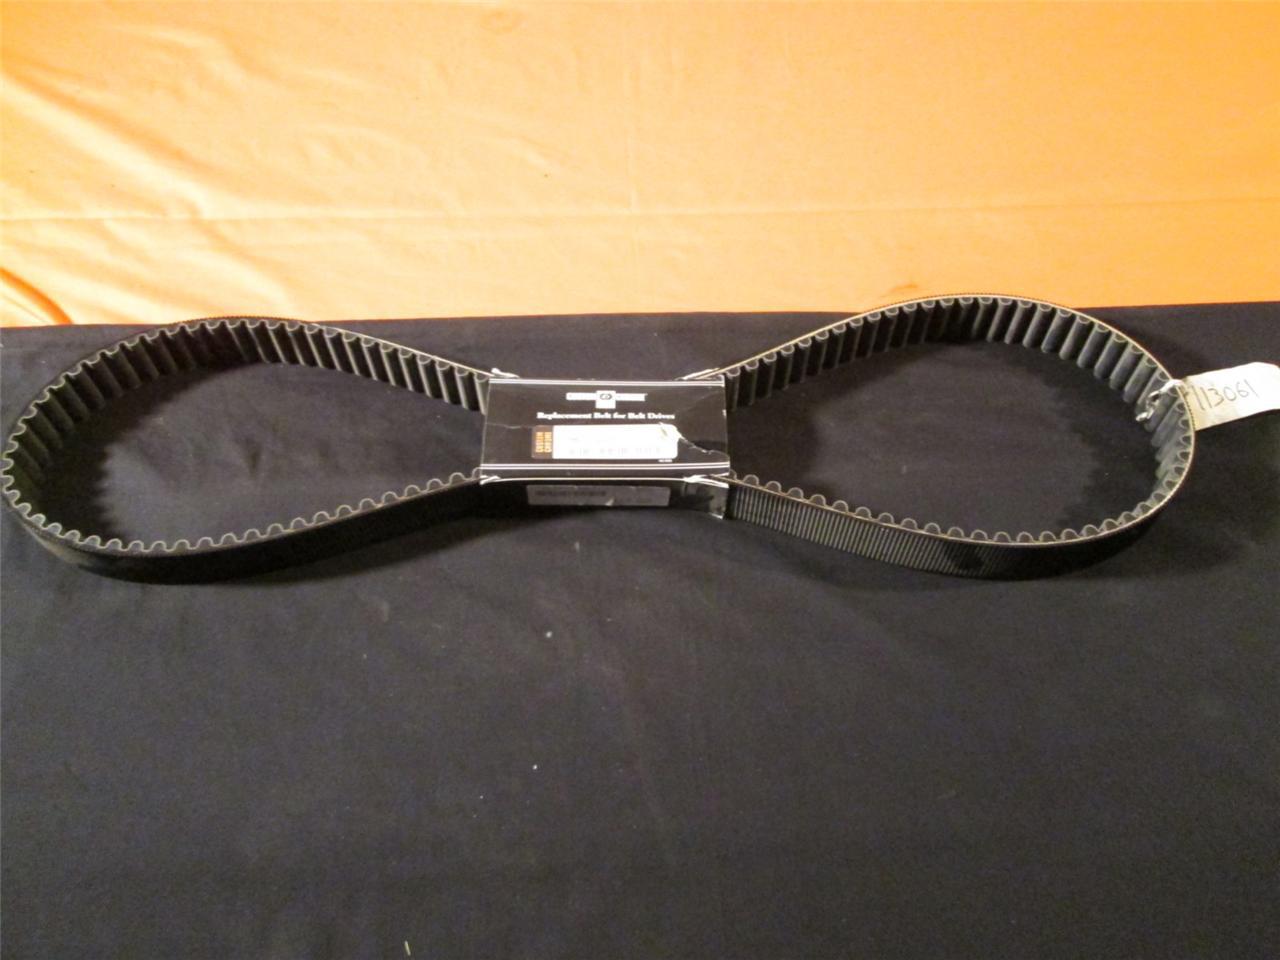 Rear belt - 4 speed '80-'88, 126 teeth, big twins rear belt drive